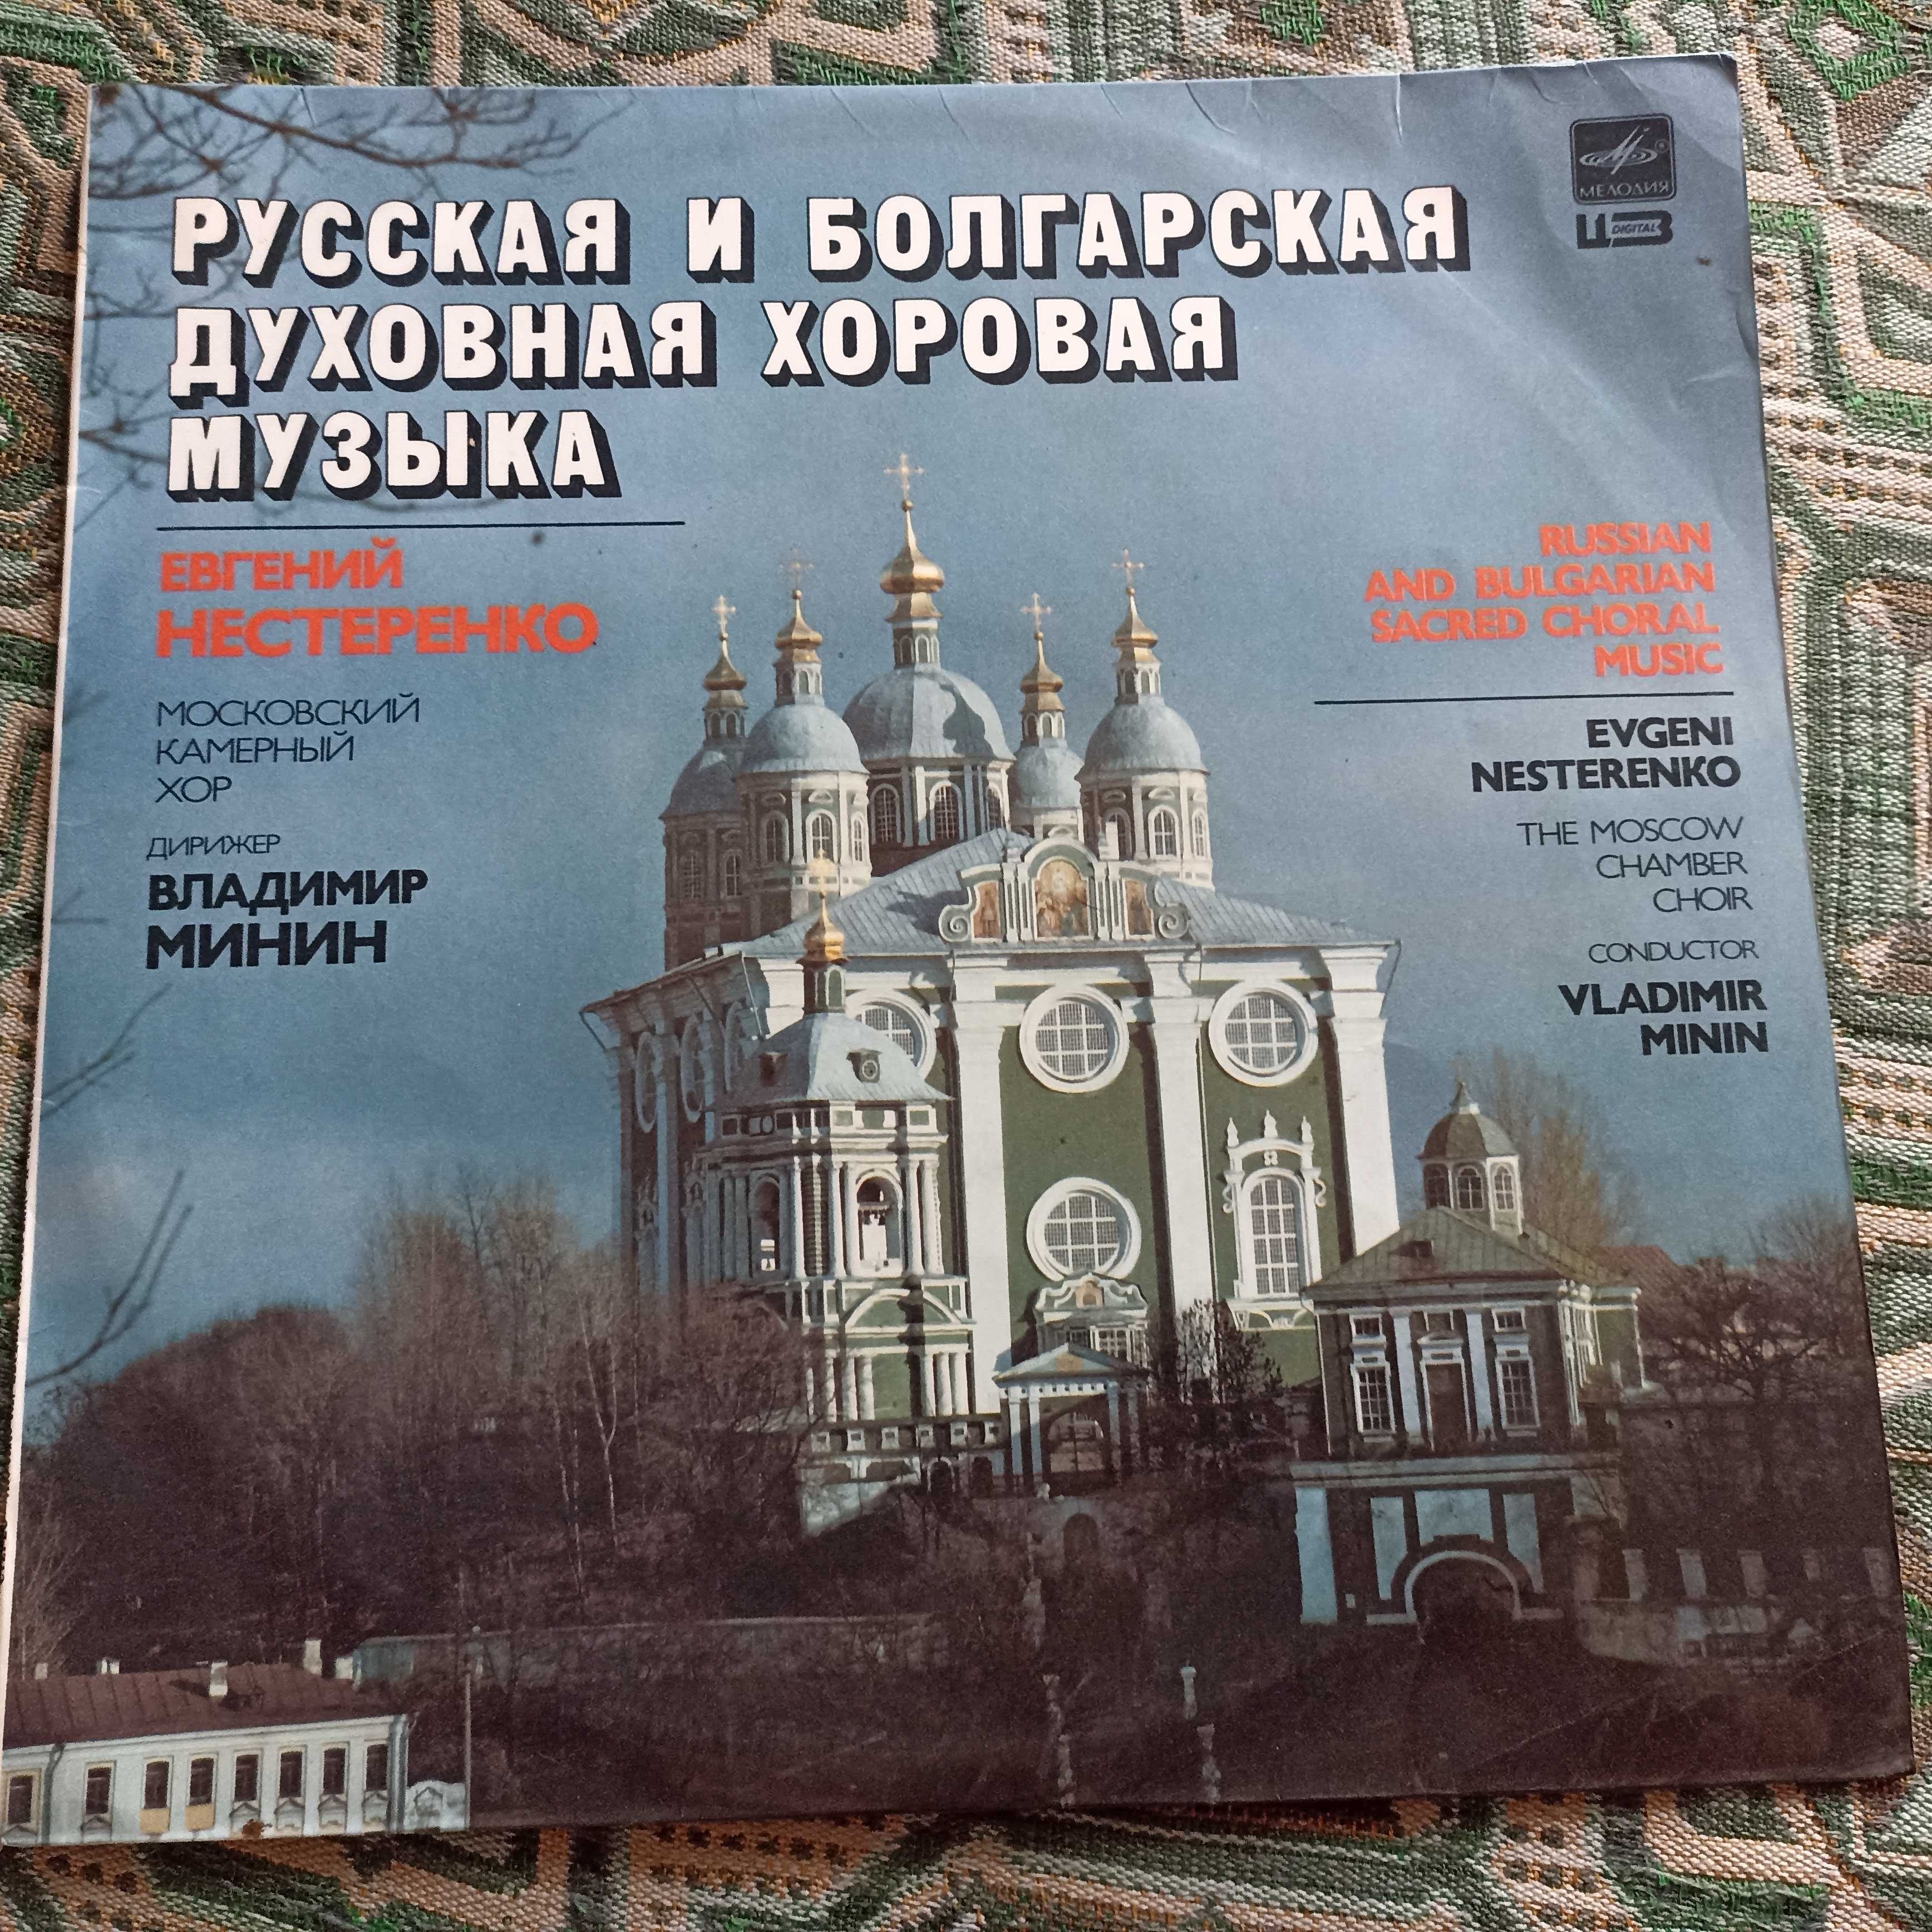 Пластинка русская и болгарская духовная хоровая музика велика